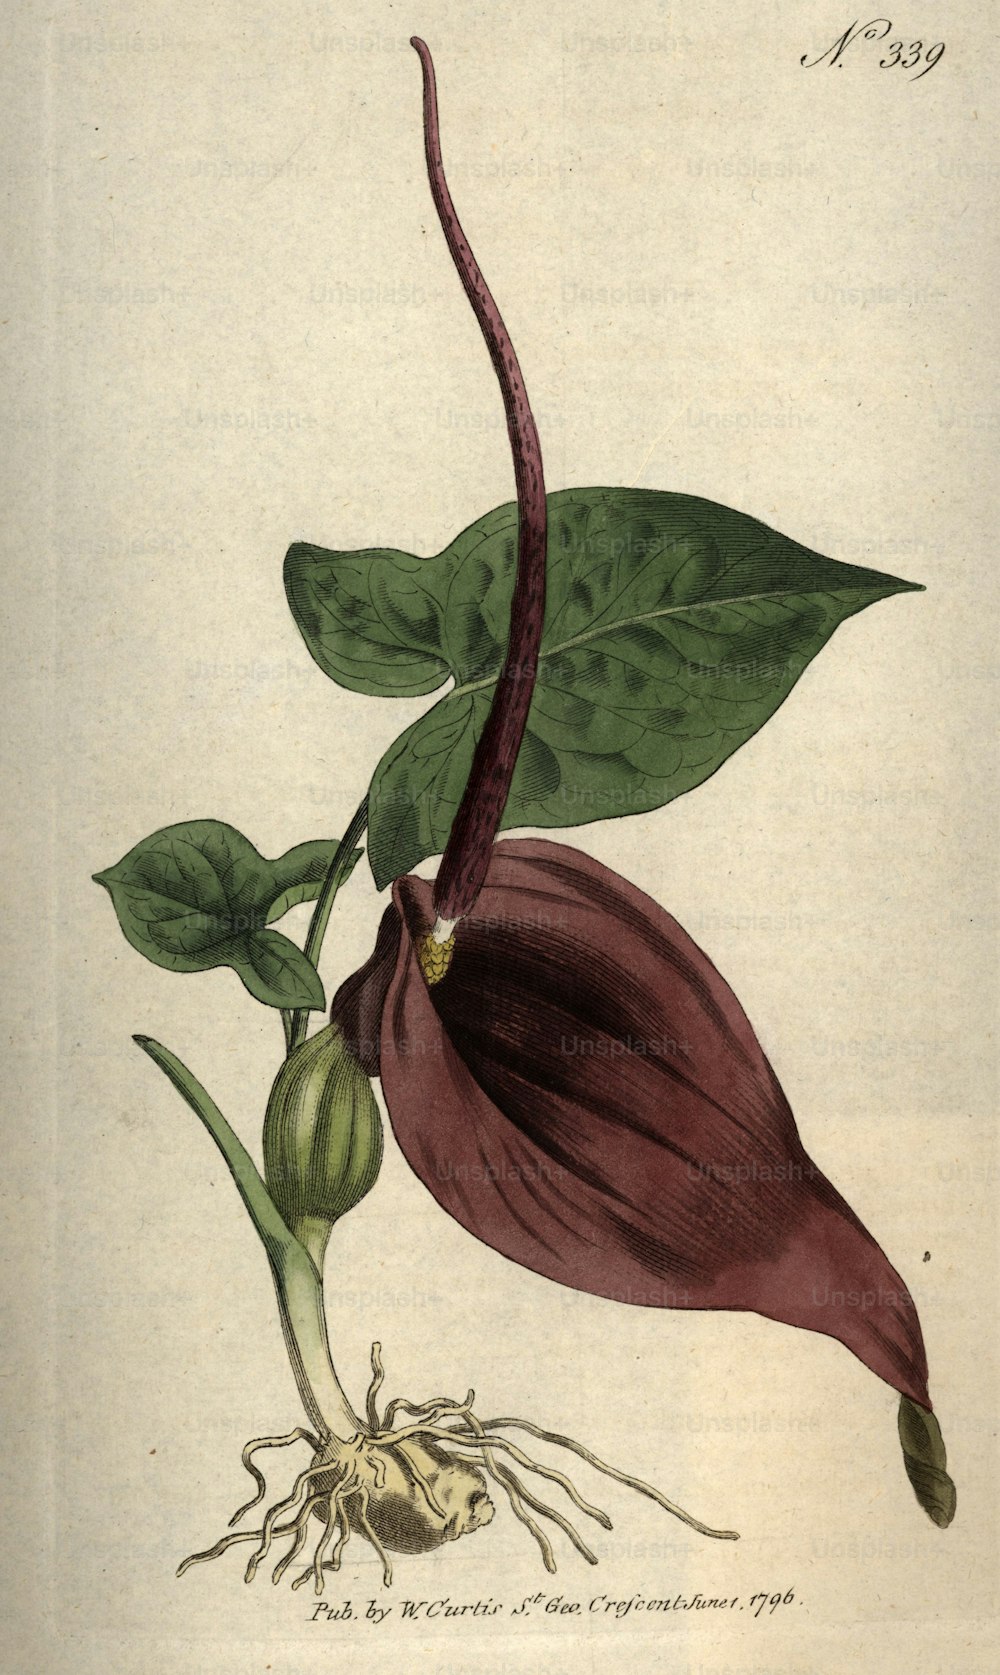 1796 : 큰 잎이 달린 이국적인 꽃.  W 커티스의 식물 잡지 - 출판. 1796 (사진 제공: Hulton Archive/Getty Images)